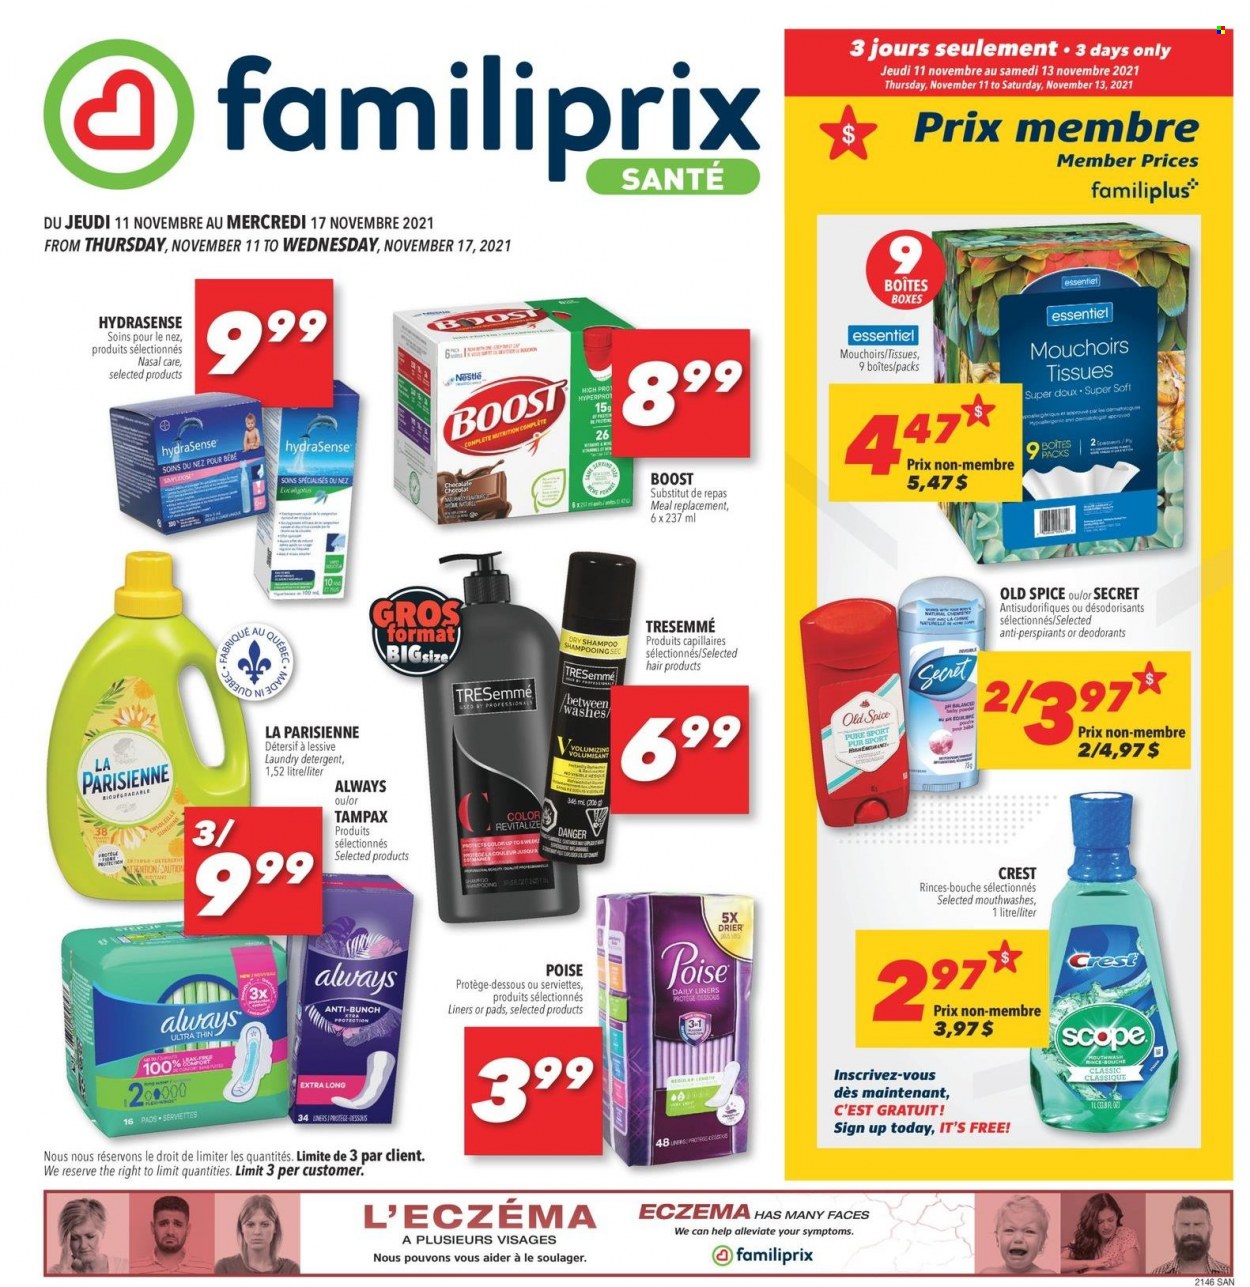 thumbnail - Familiprix Santé Flyer - November 11, 2021 - November 17, 2021 - Sales products - spice, Boost, tissues, laundry detergent, Crest, TRESemmé, Nestlé, detergent, Tampax, Old Spice, deodorant. Page 1.